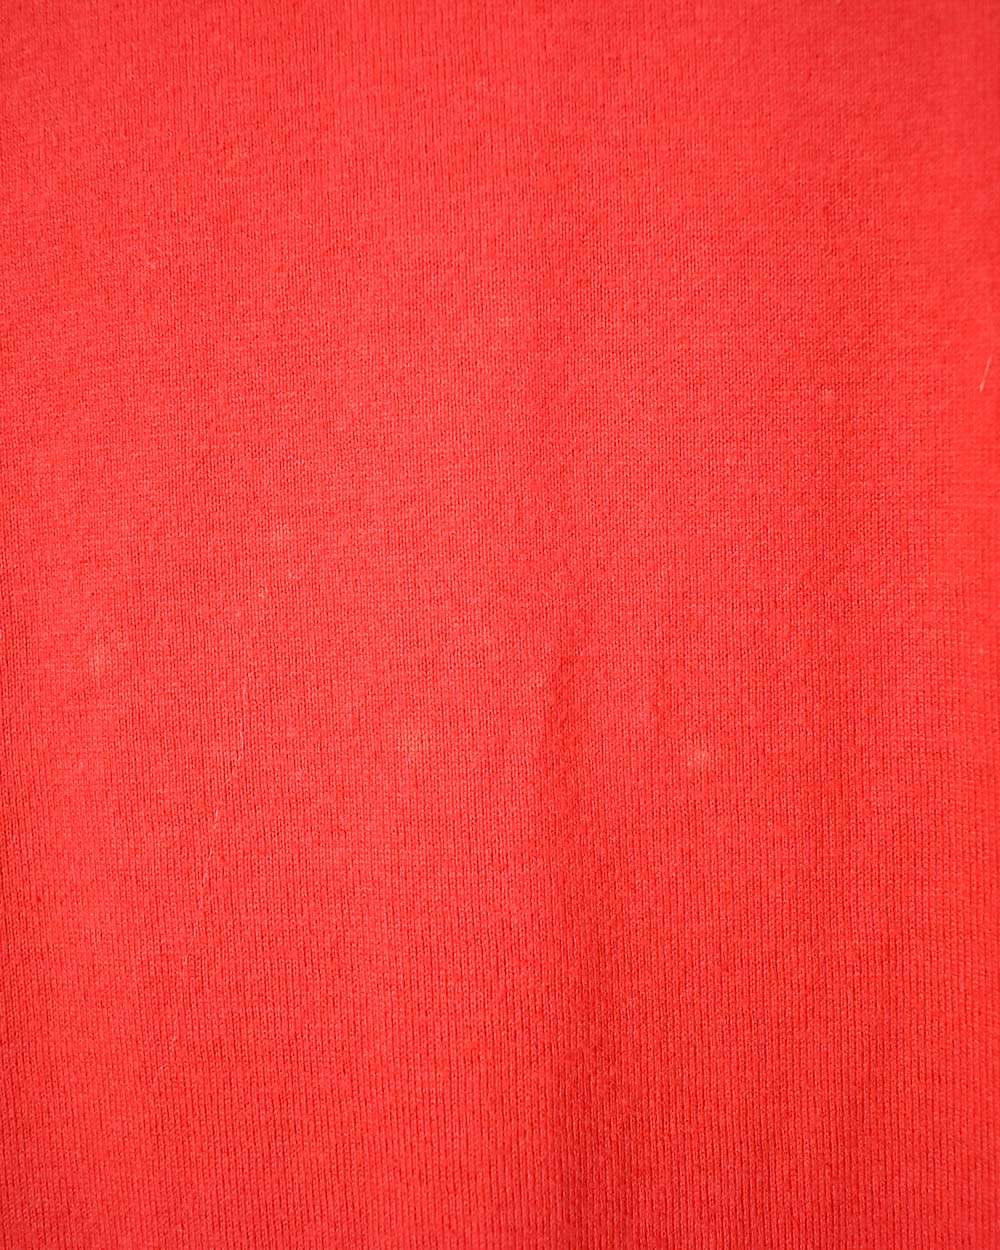 Red Umbro England 2004/05 Training T-Shirt - X-Large